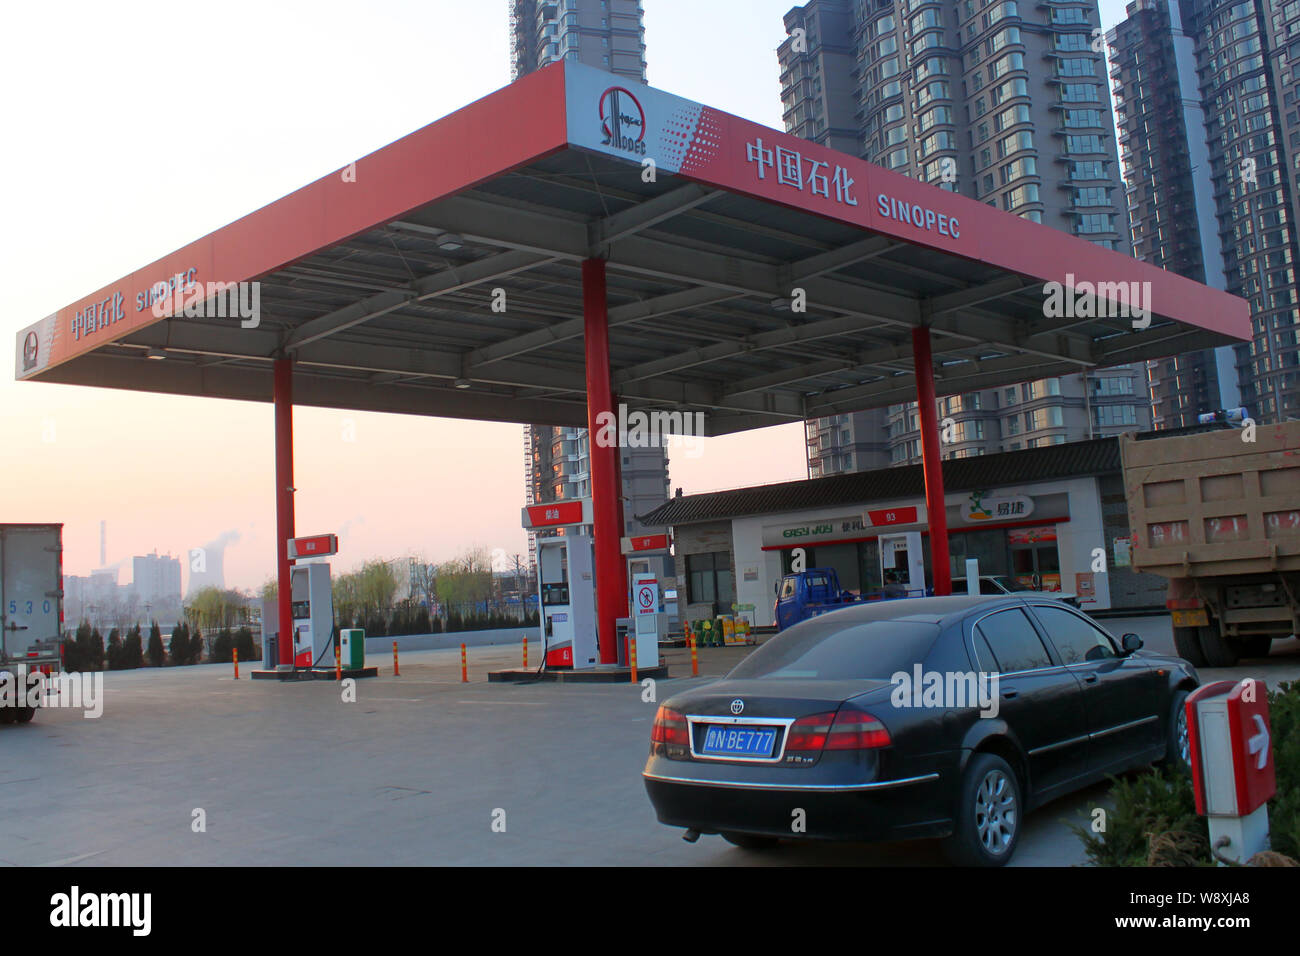 Cola de vehículos que se reposte en una gasolinera de Sinopec en la ciudad de Dezhou, provincia de Shandong, China oriental, el 20 de marzo de 2014. China Petroleum y Chemi Foto de stock